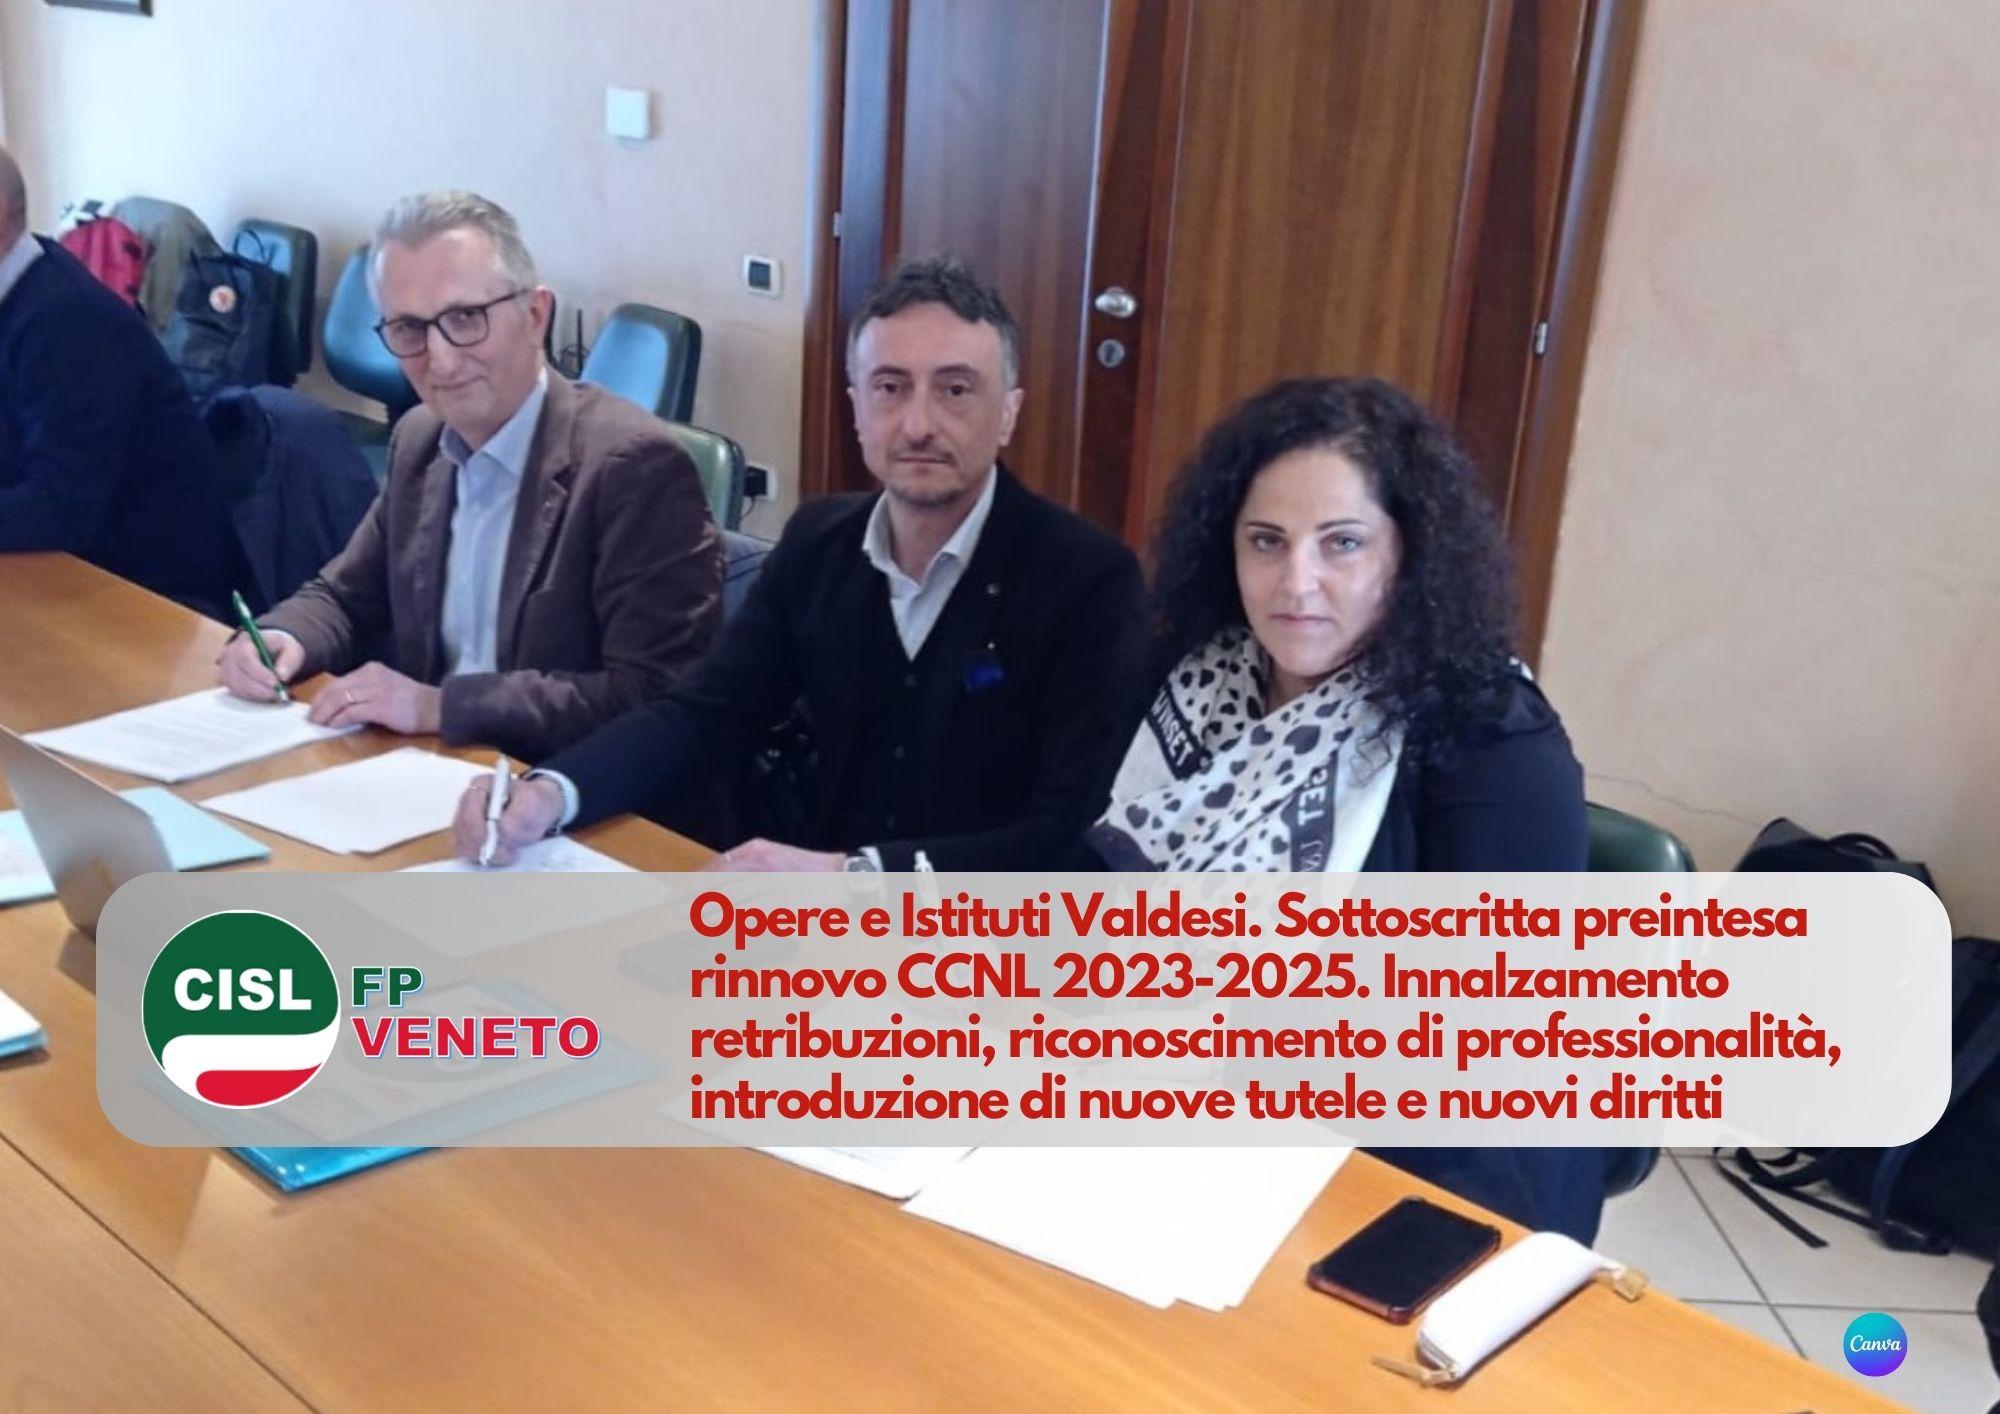 CISL FP Veneto. Opere e Istituti Valdesi. Sottoscritta preintesa rinnovo CCNL 2023-2025.